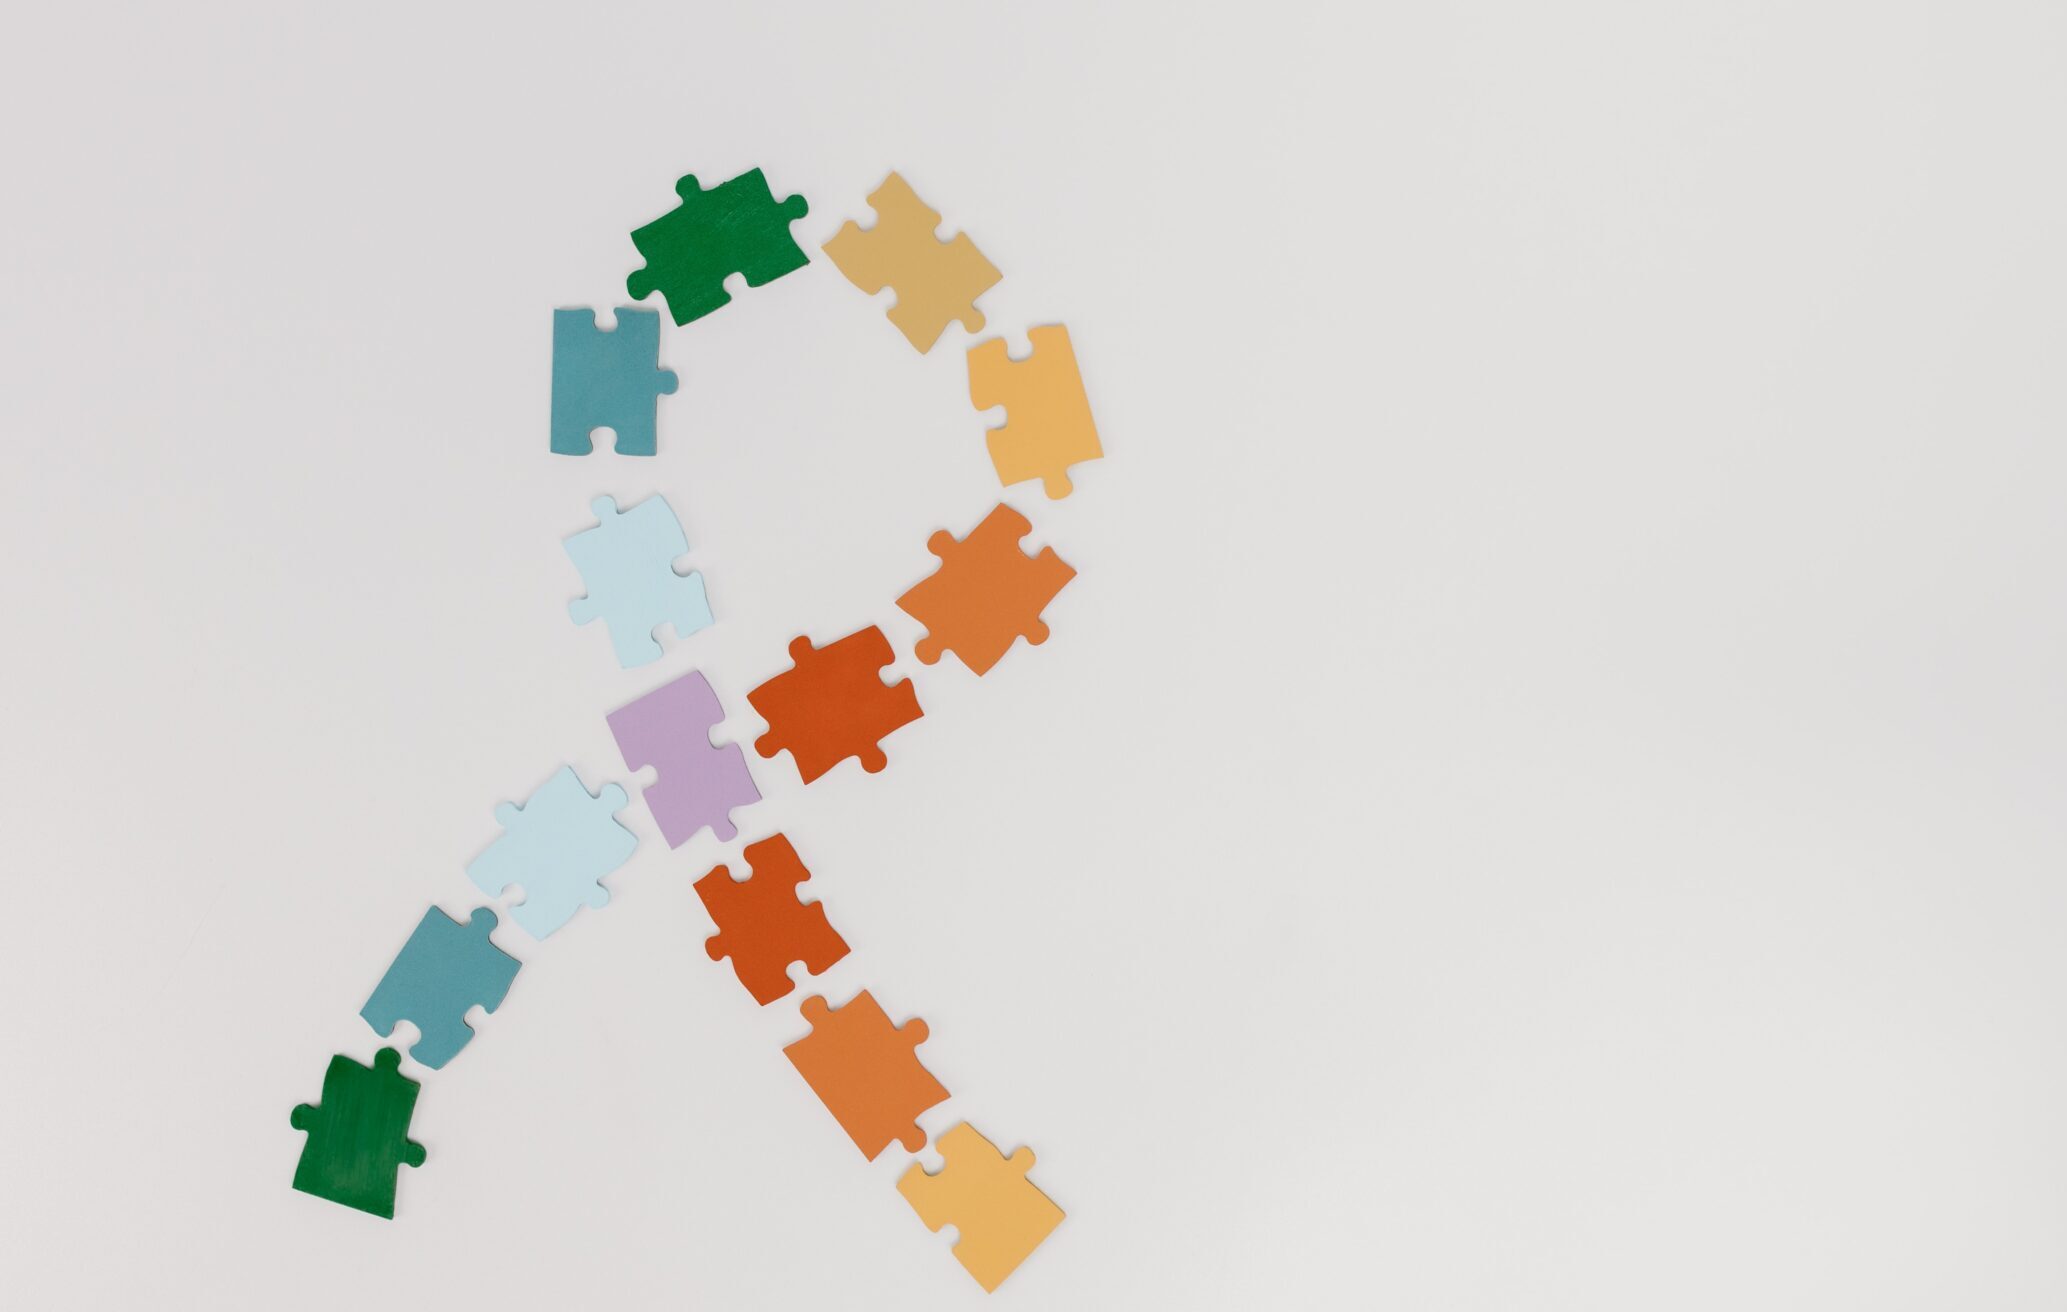 Foto em fundo branco, com peças de quebra-cabeça coloridas foramando um laço, símbolo do autismo